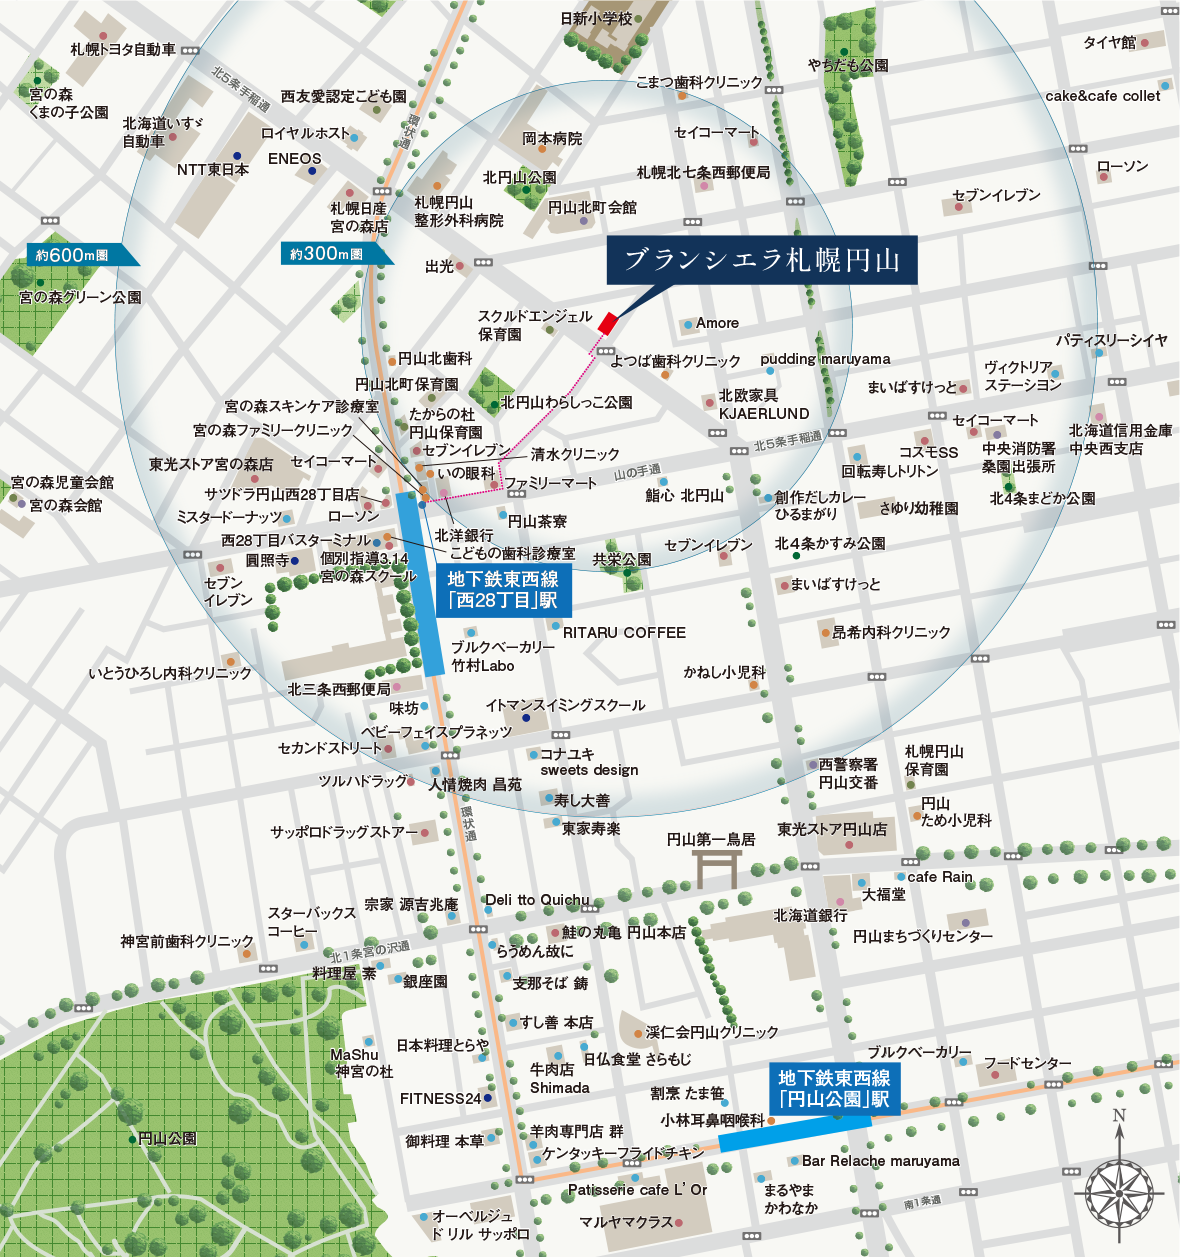 Location Access 公式 ブランシエラ札幌円山 札幌市中央区新築分譲マンション